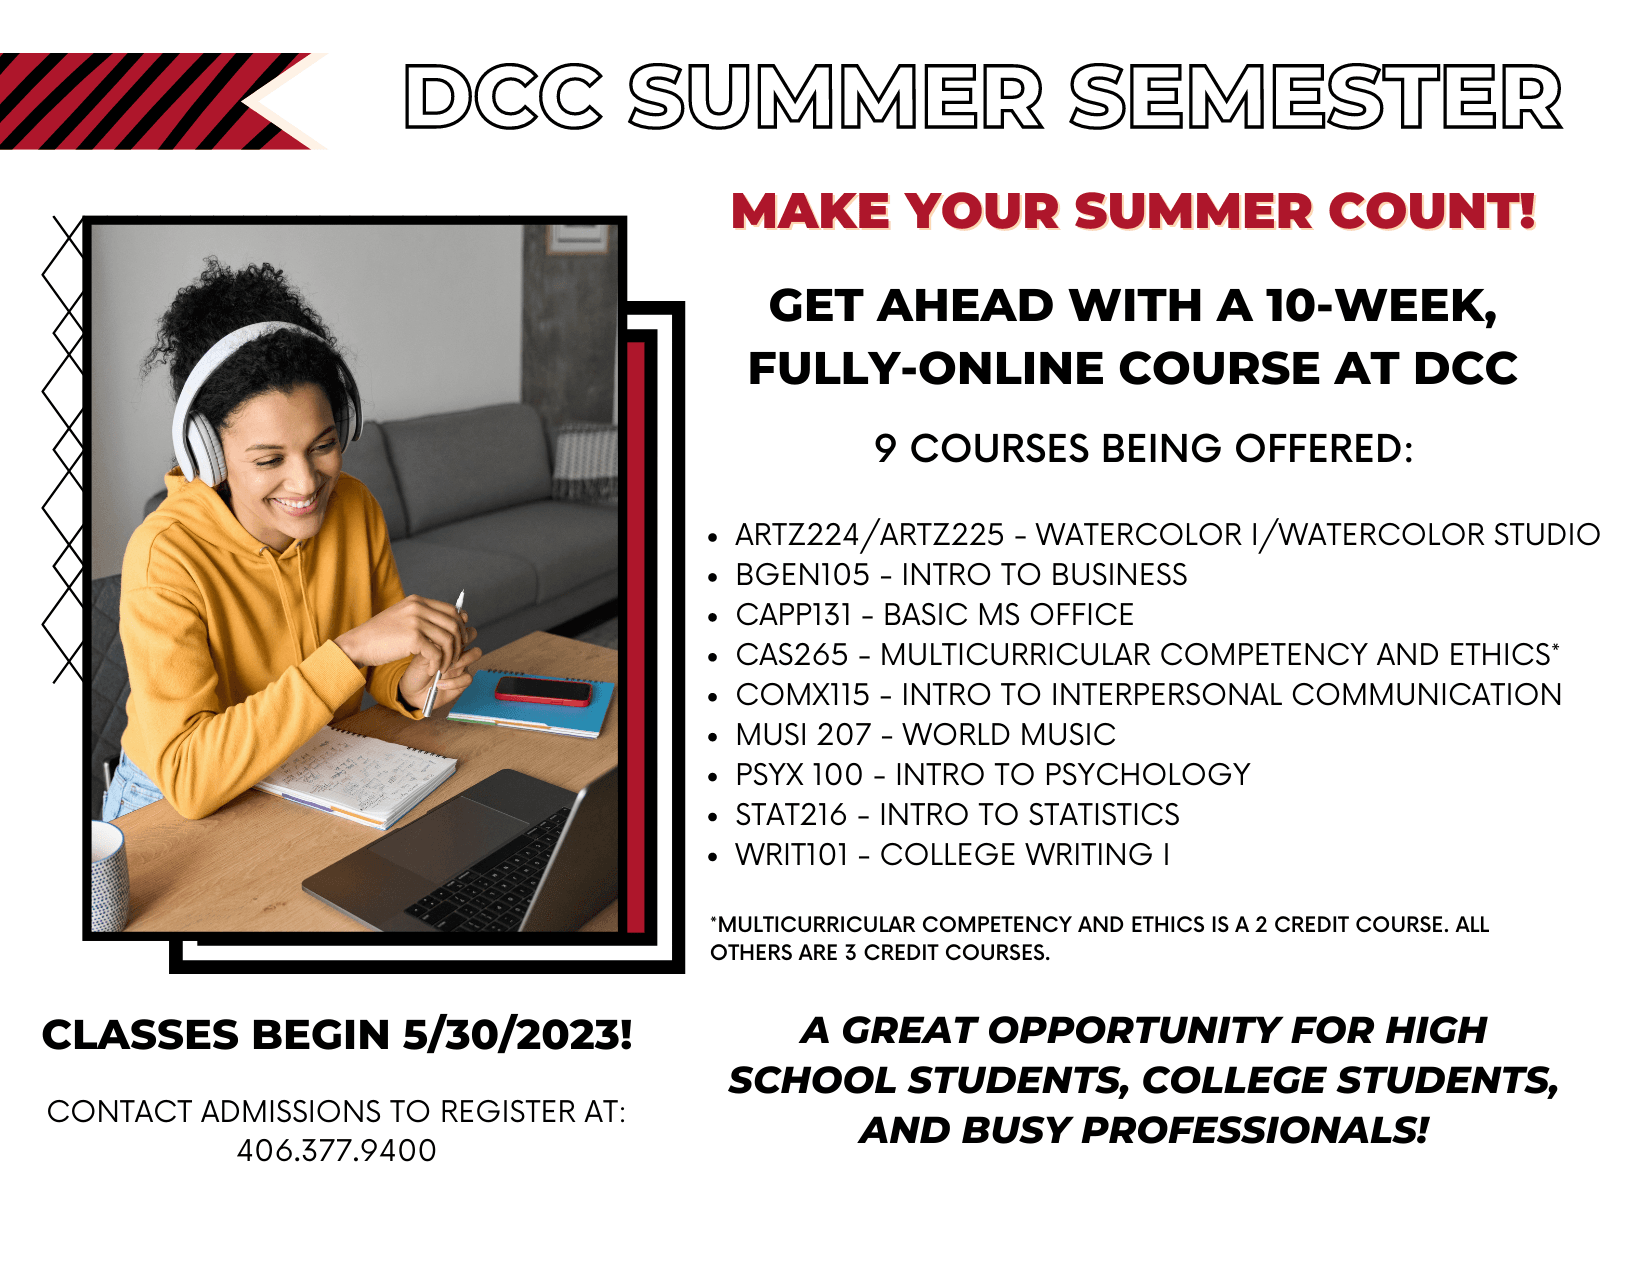 Summer Semester Begins on 5/30!